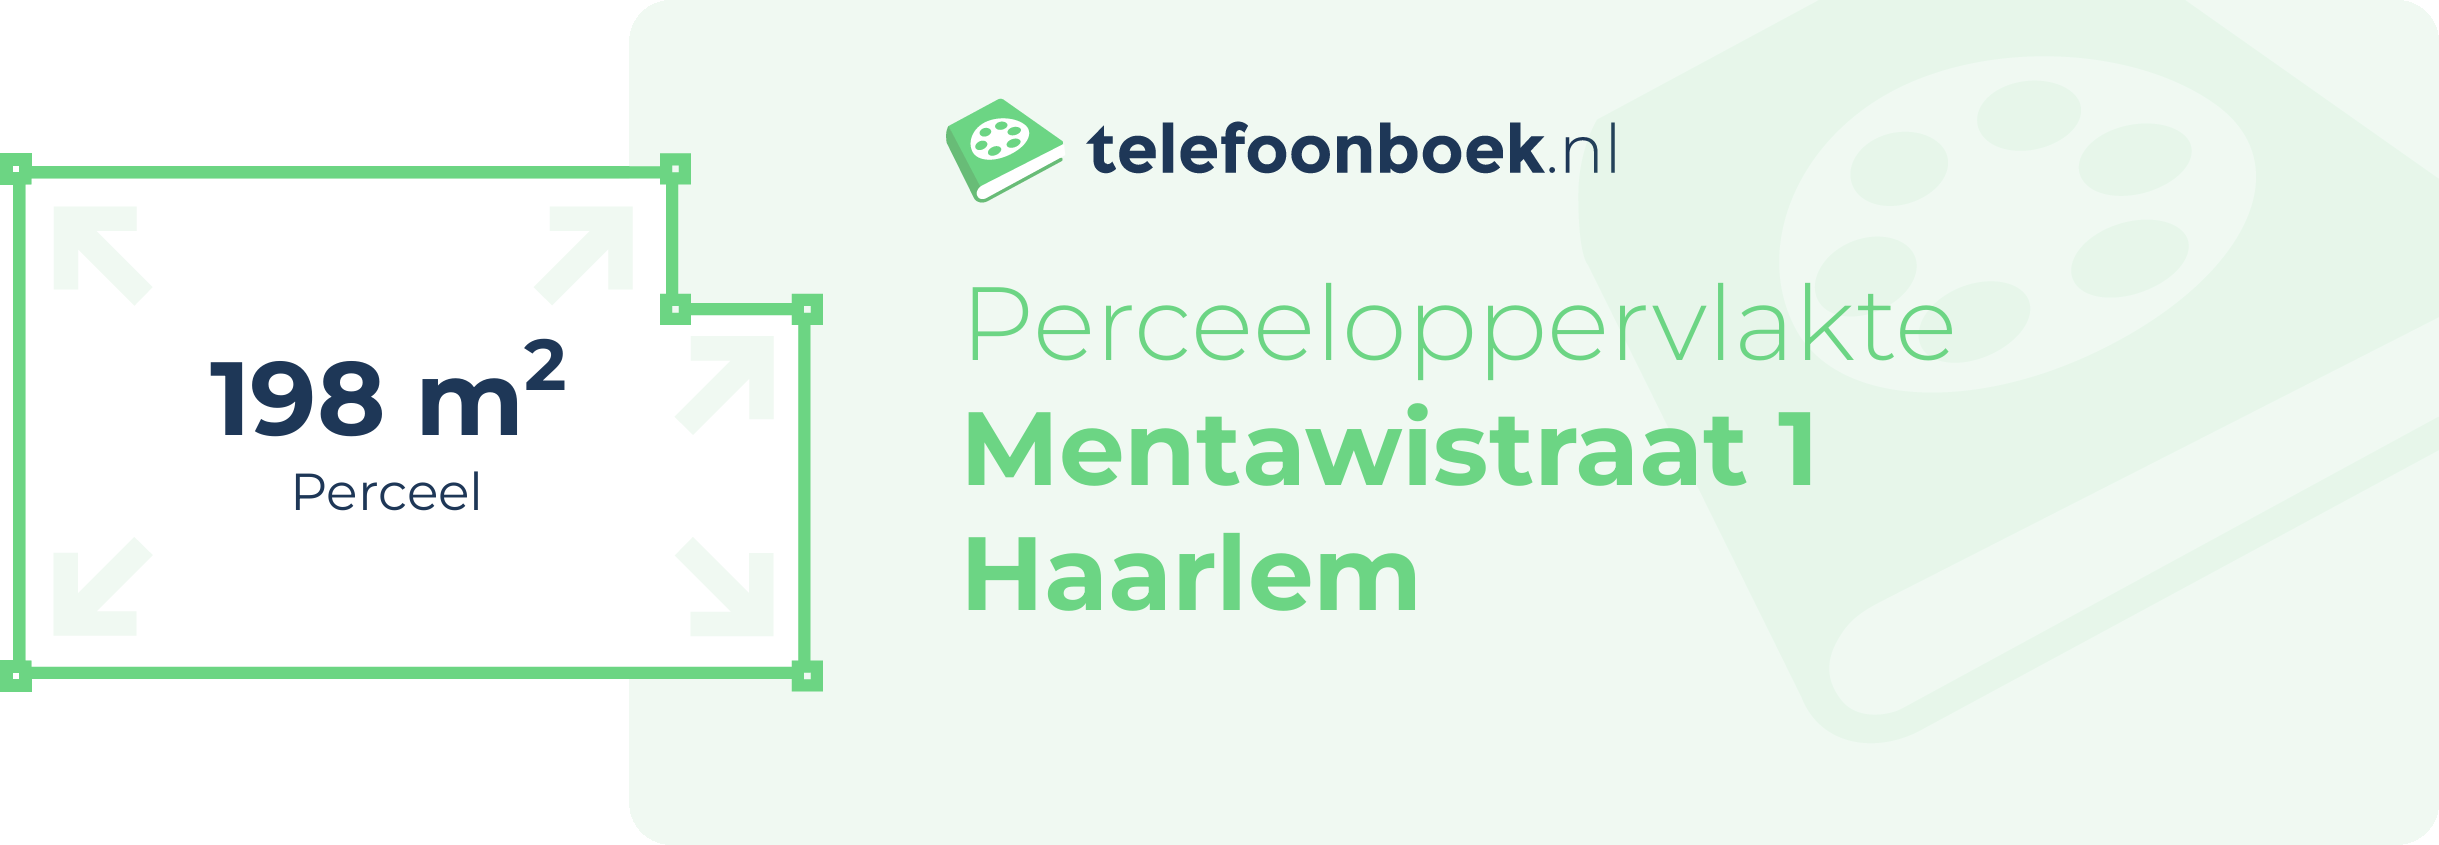 Perceeloppervlakte Mentawistraat 1 Haarlem